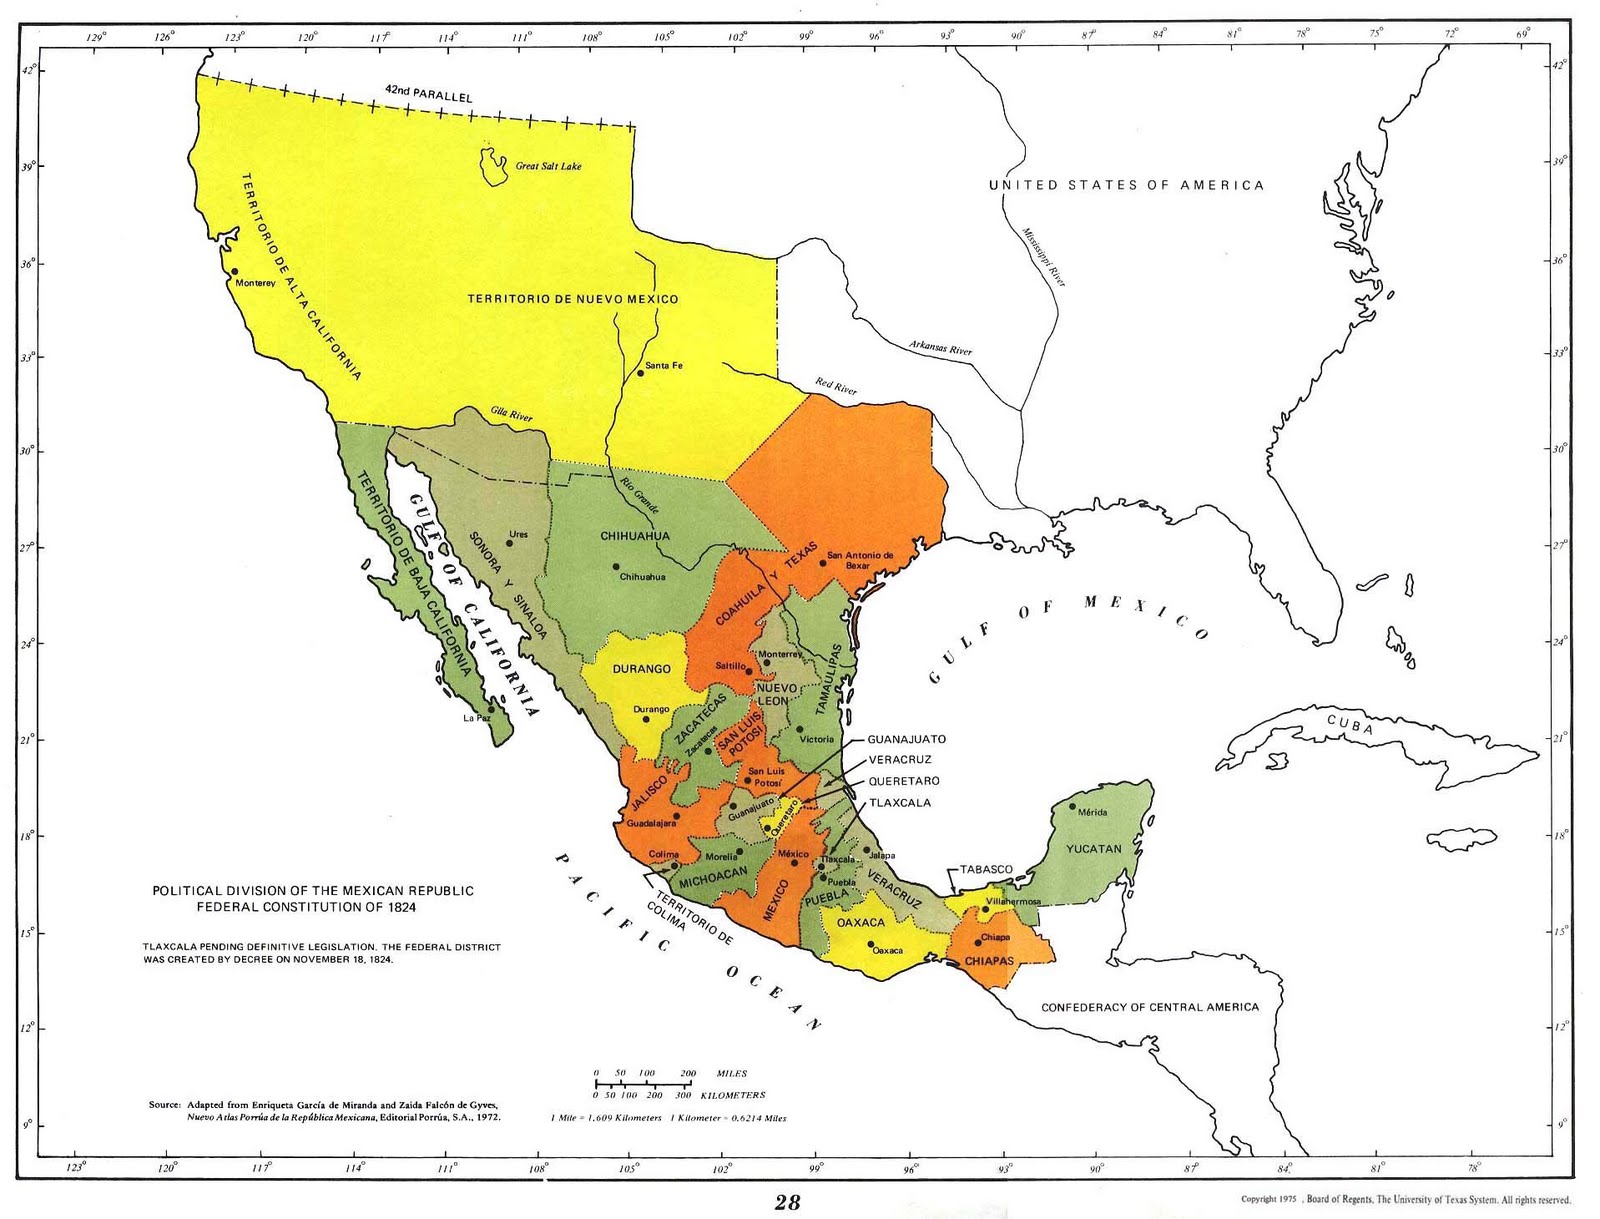 http://2.bp.blogspot.com/-tQ3hE6ZNATY/TiTZraShyGI/AAAAAAAAAMU/alFSDbUKp9M/s1600/Mapa-de-las-Divisiones-Politica-de-la-Republica-Mexicana-Segun-Constitucion-Federal-de-1824-Mexico-3244.jpg